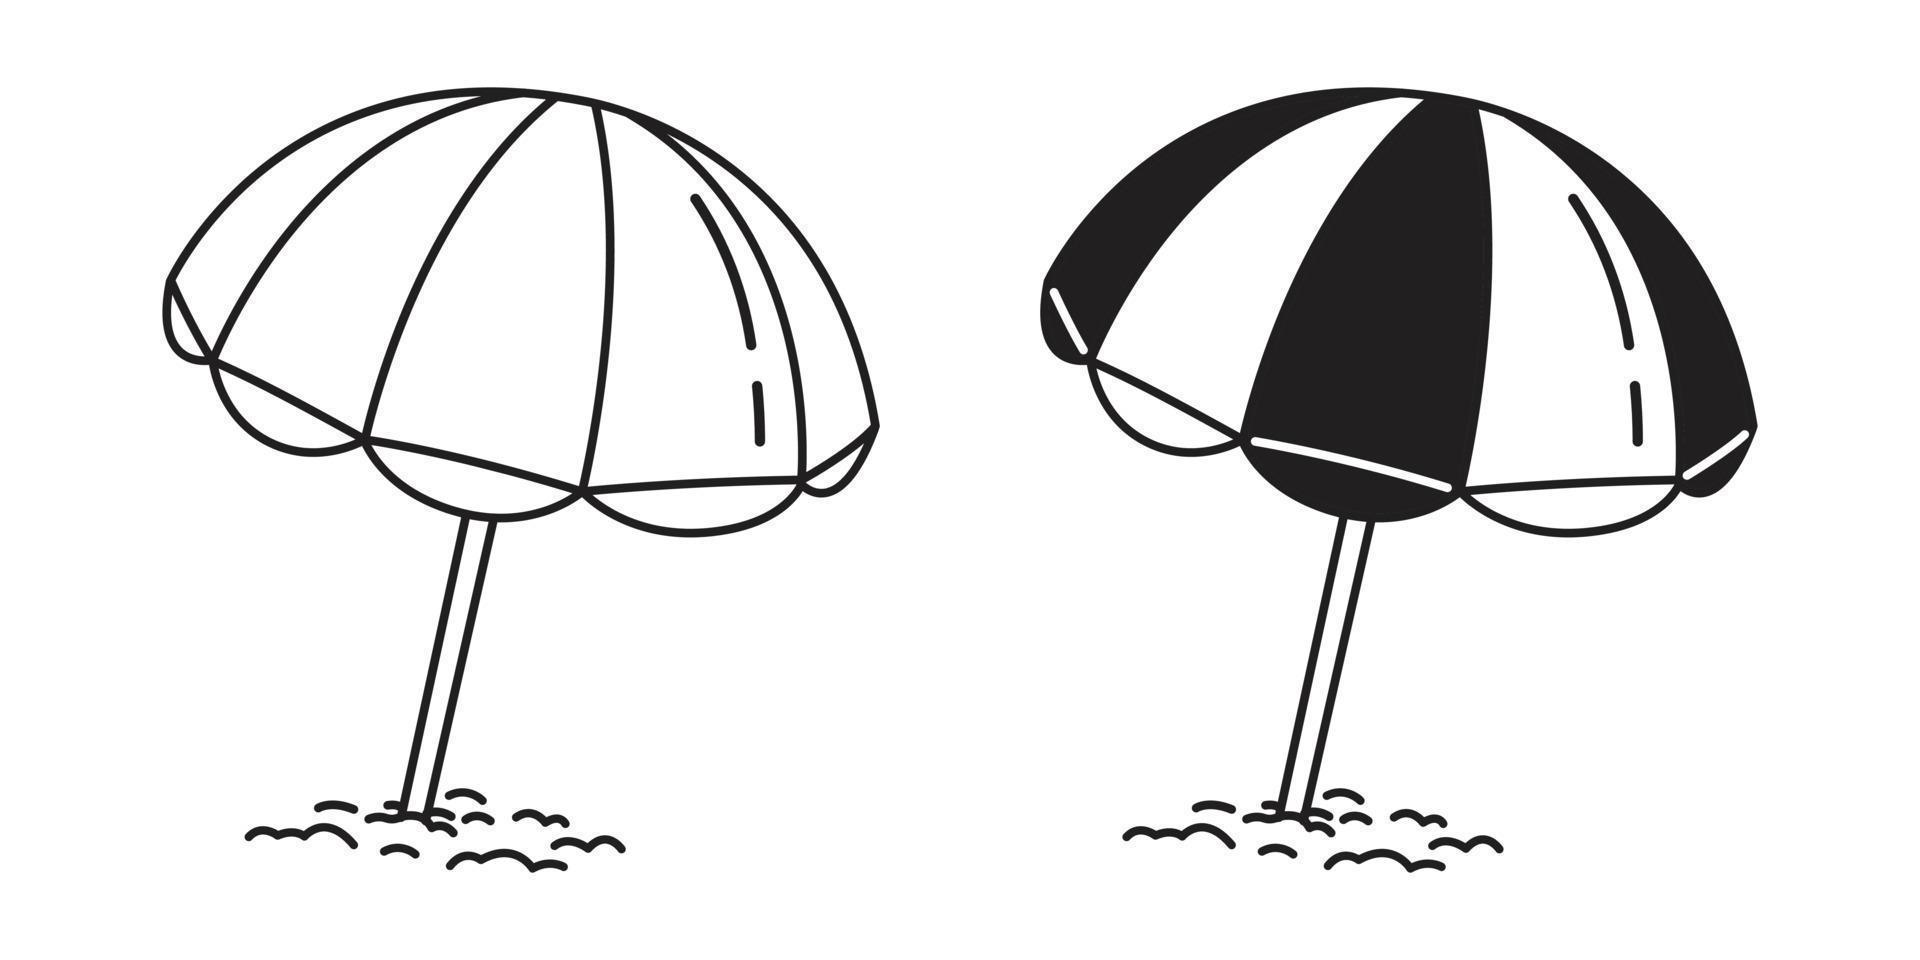 beach umbrella vector logo illustration summer sea ocean doodle cartoon white